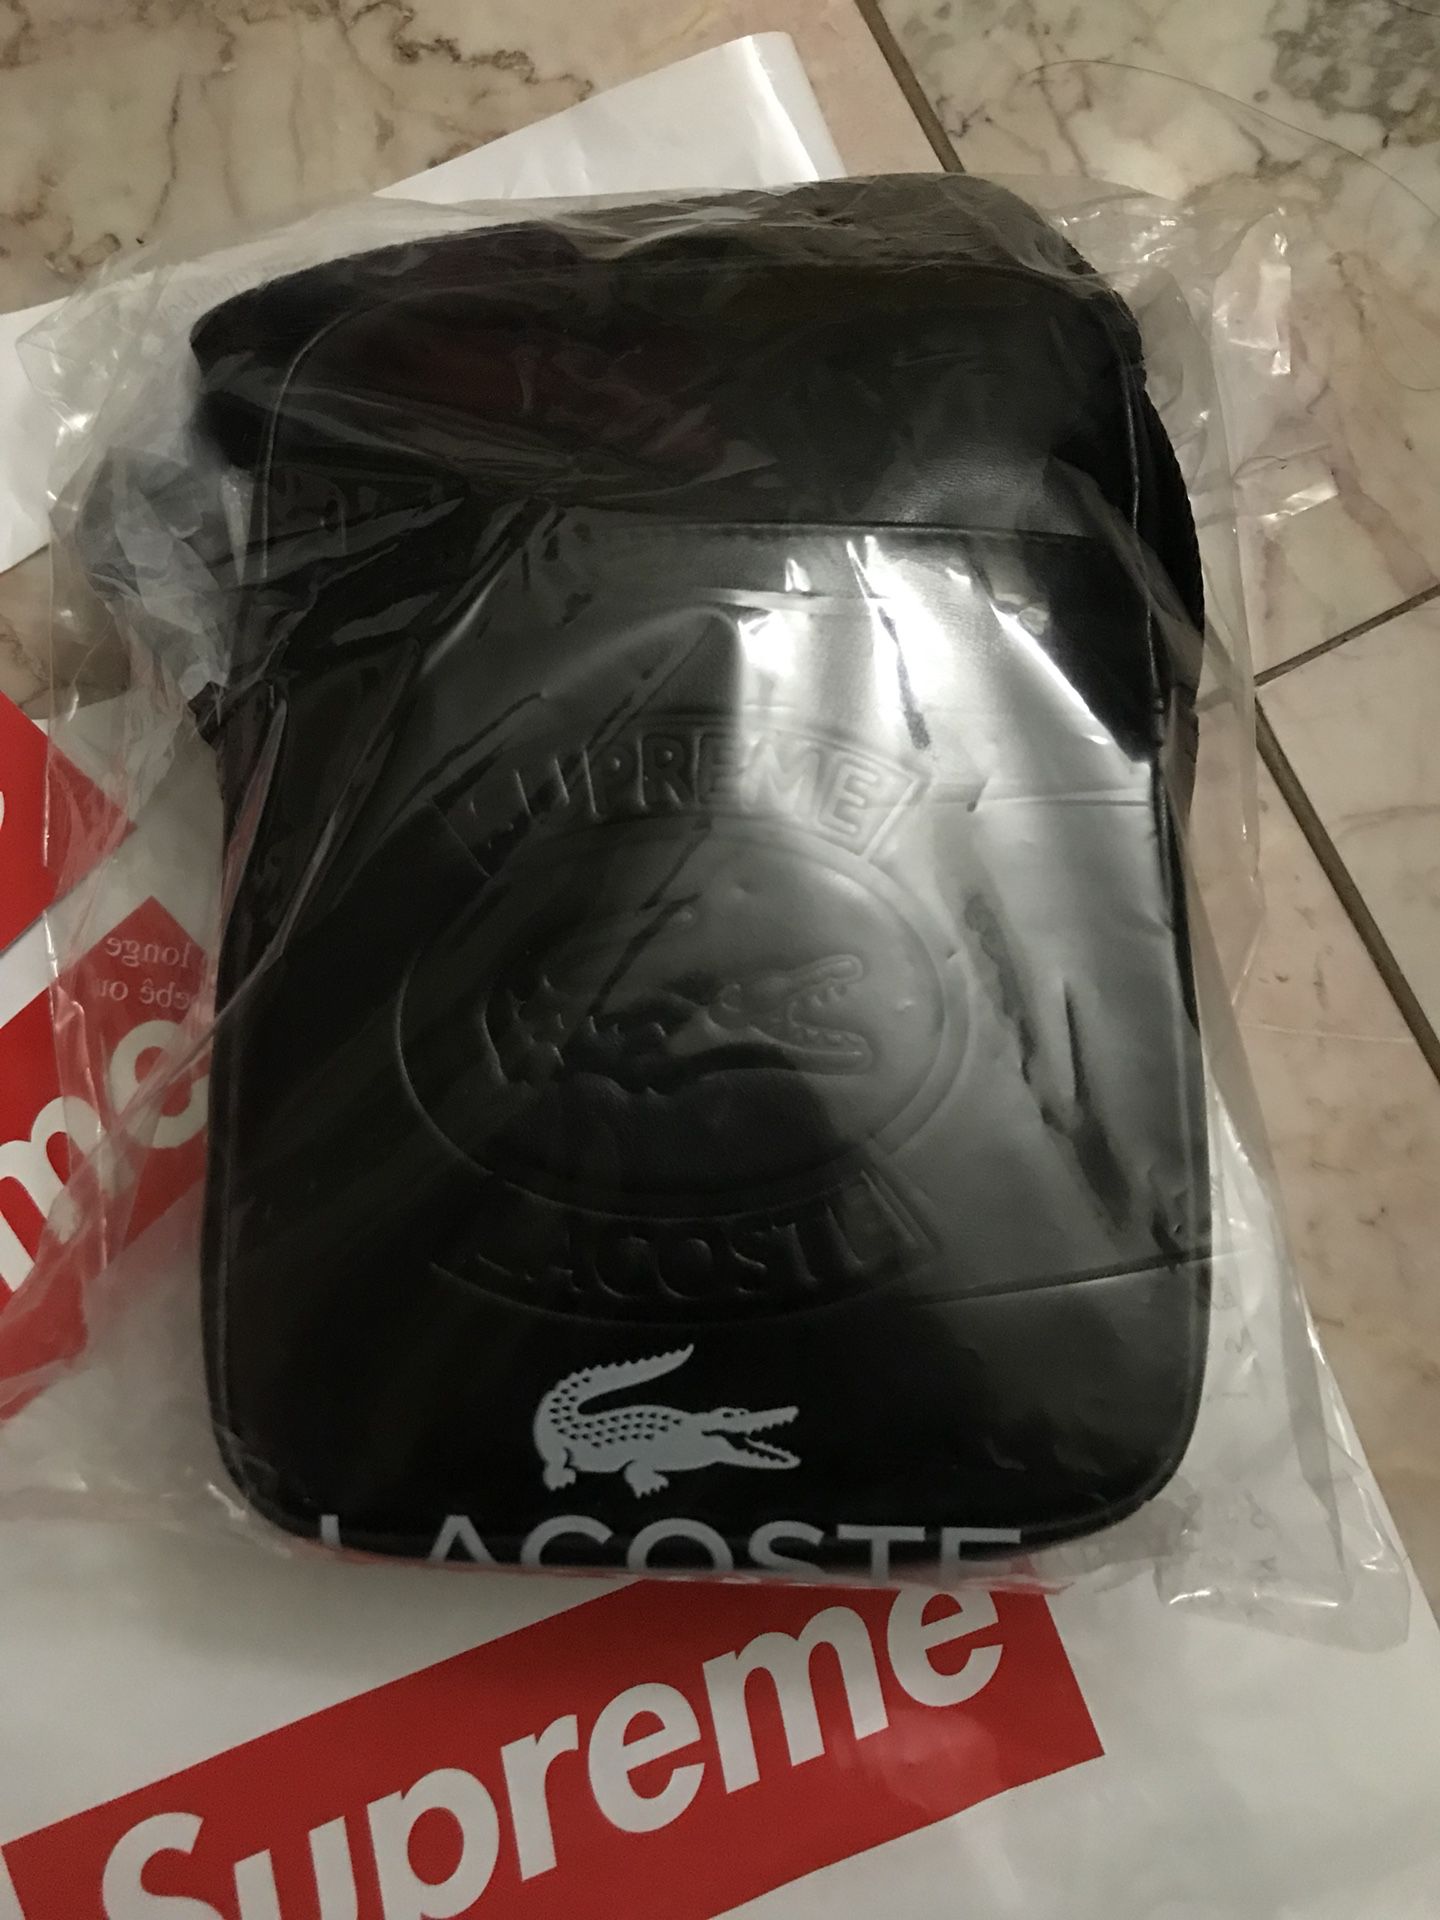 Supreme x Lacoste Shoulder Bag for Sale Honolulu, - OfferUp